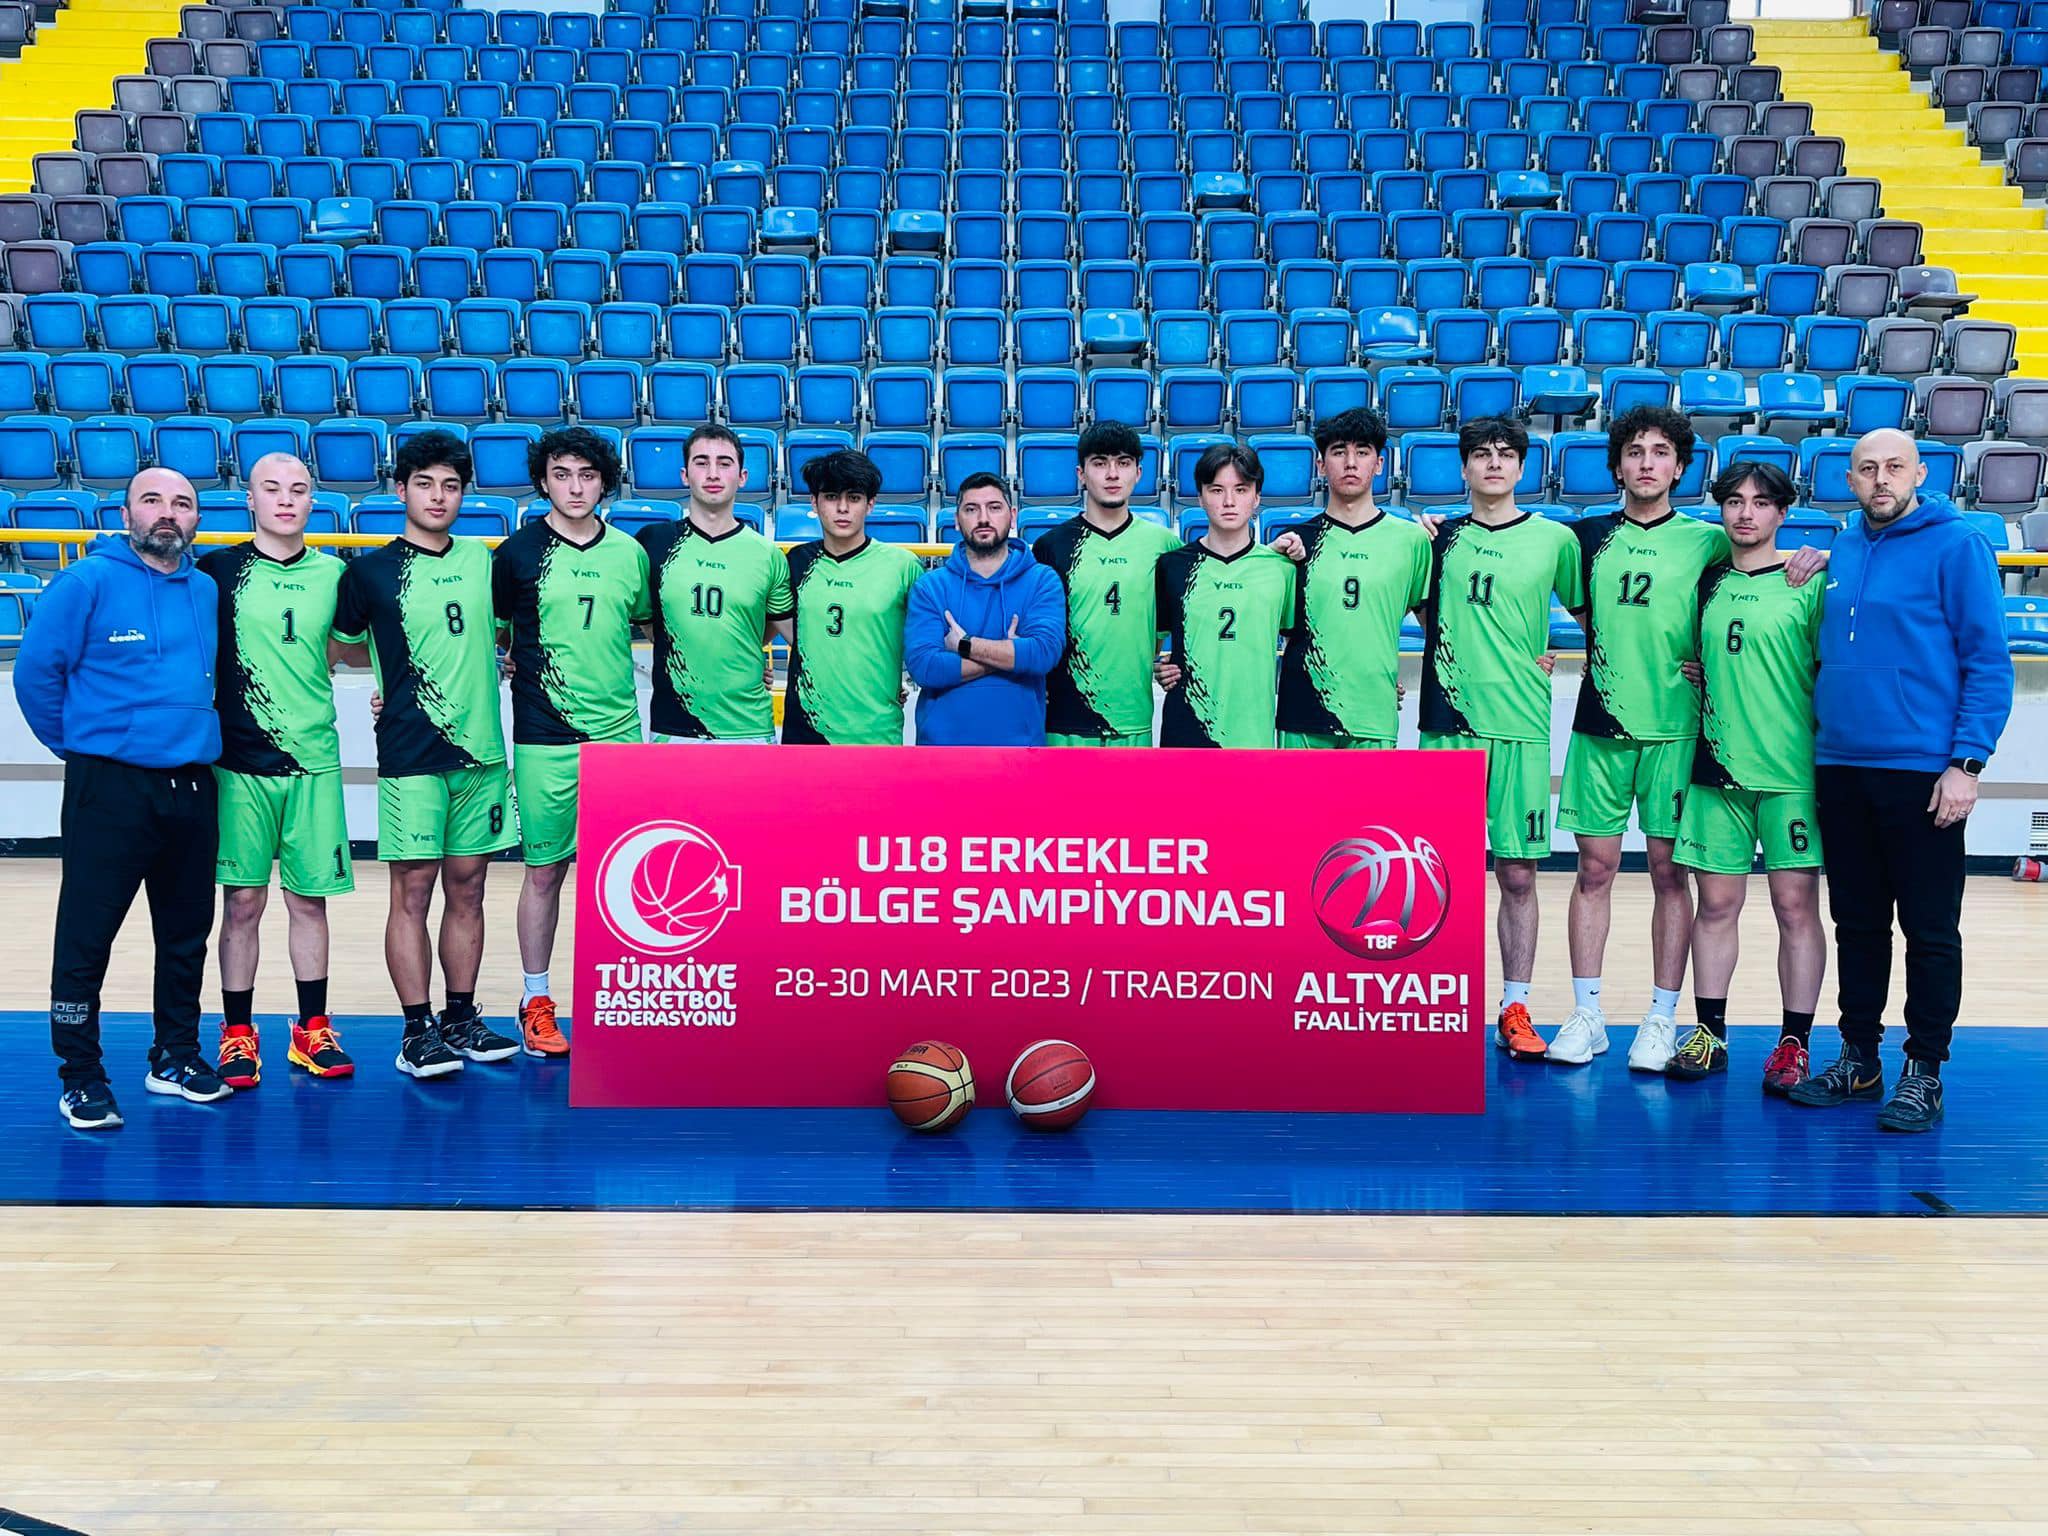 U18 Erkekler Basketbol Bölge Şampiyonu Gençlikspor